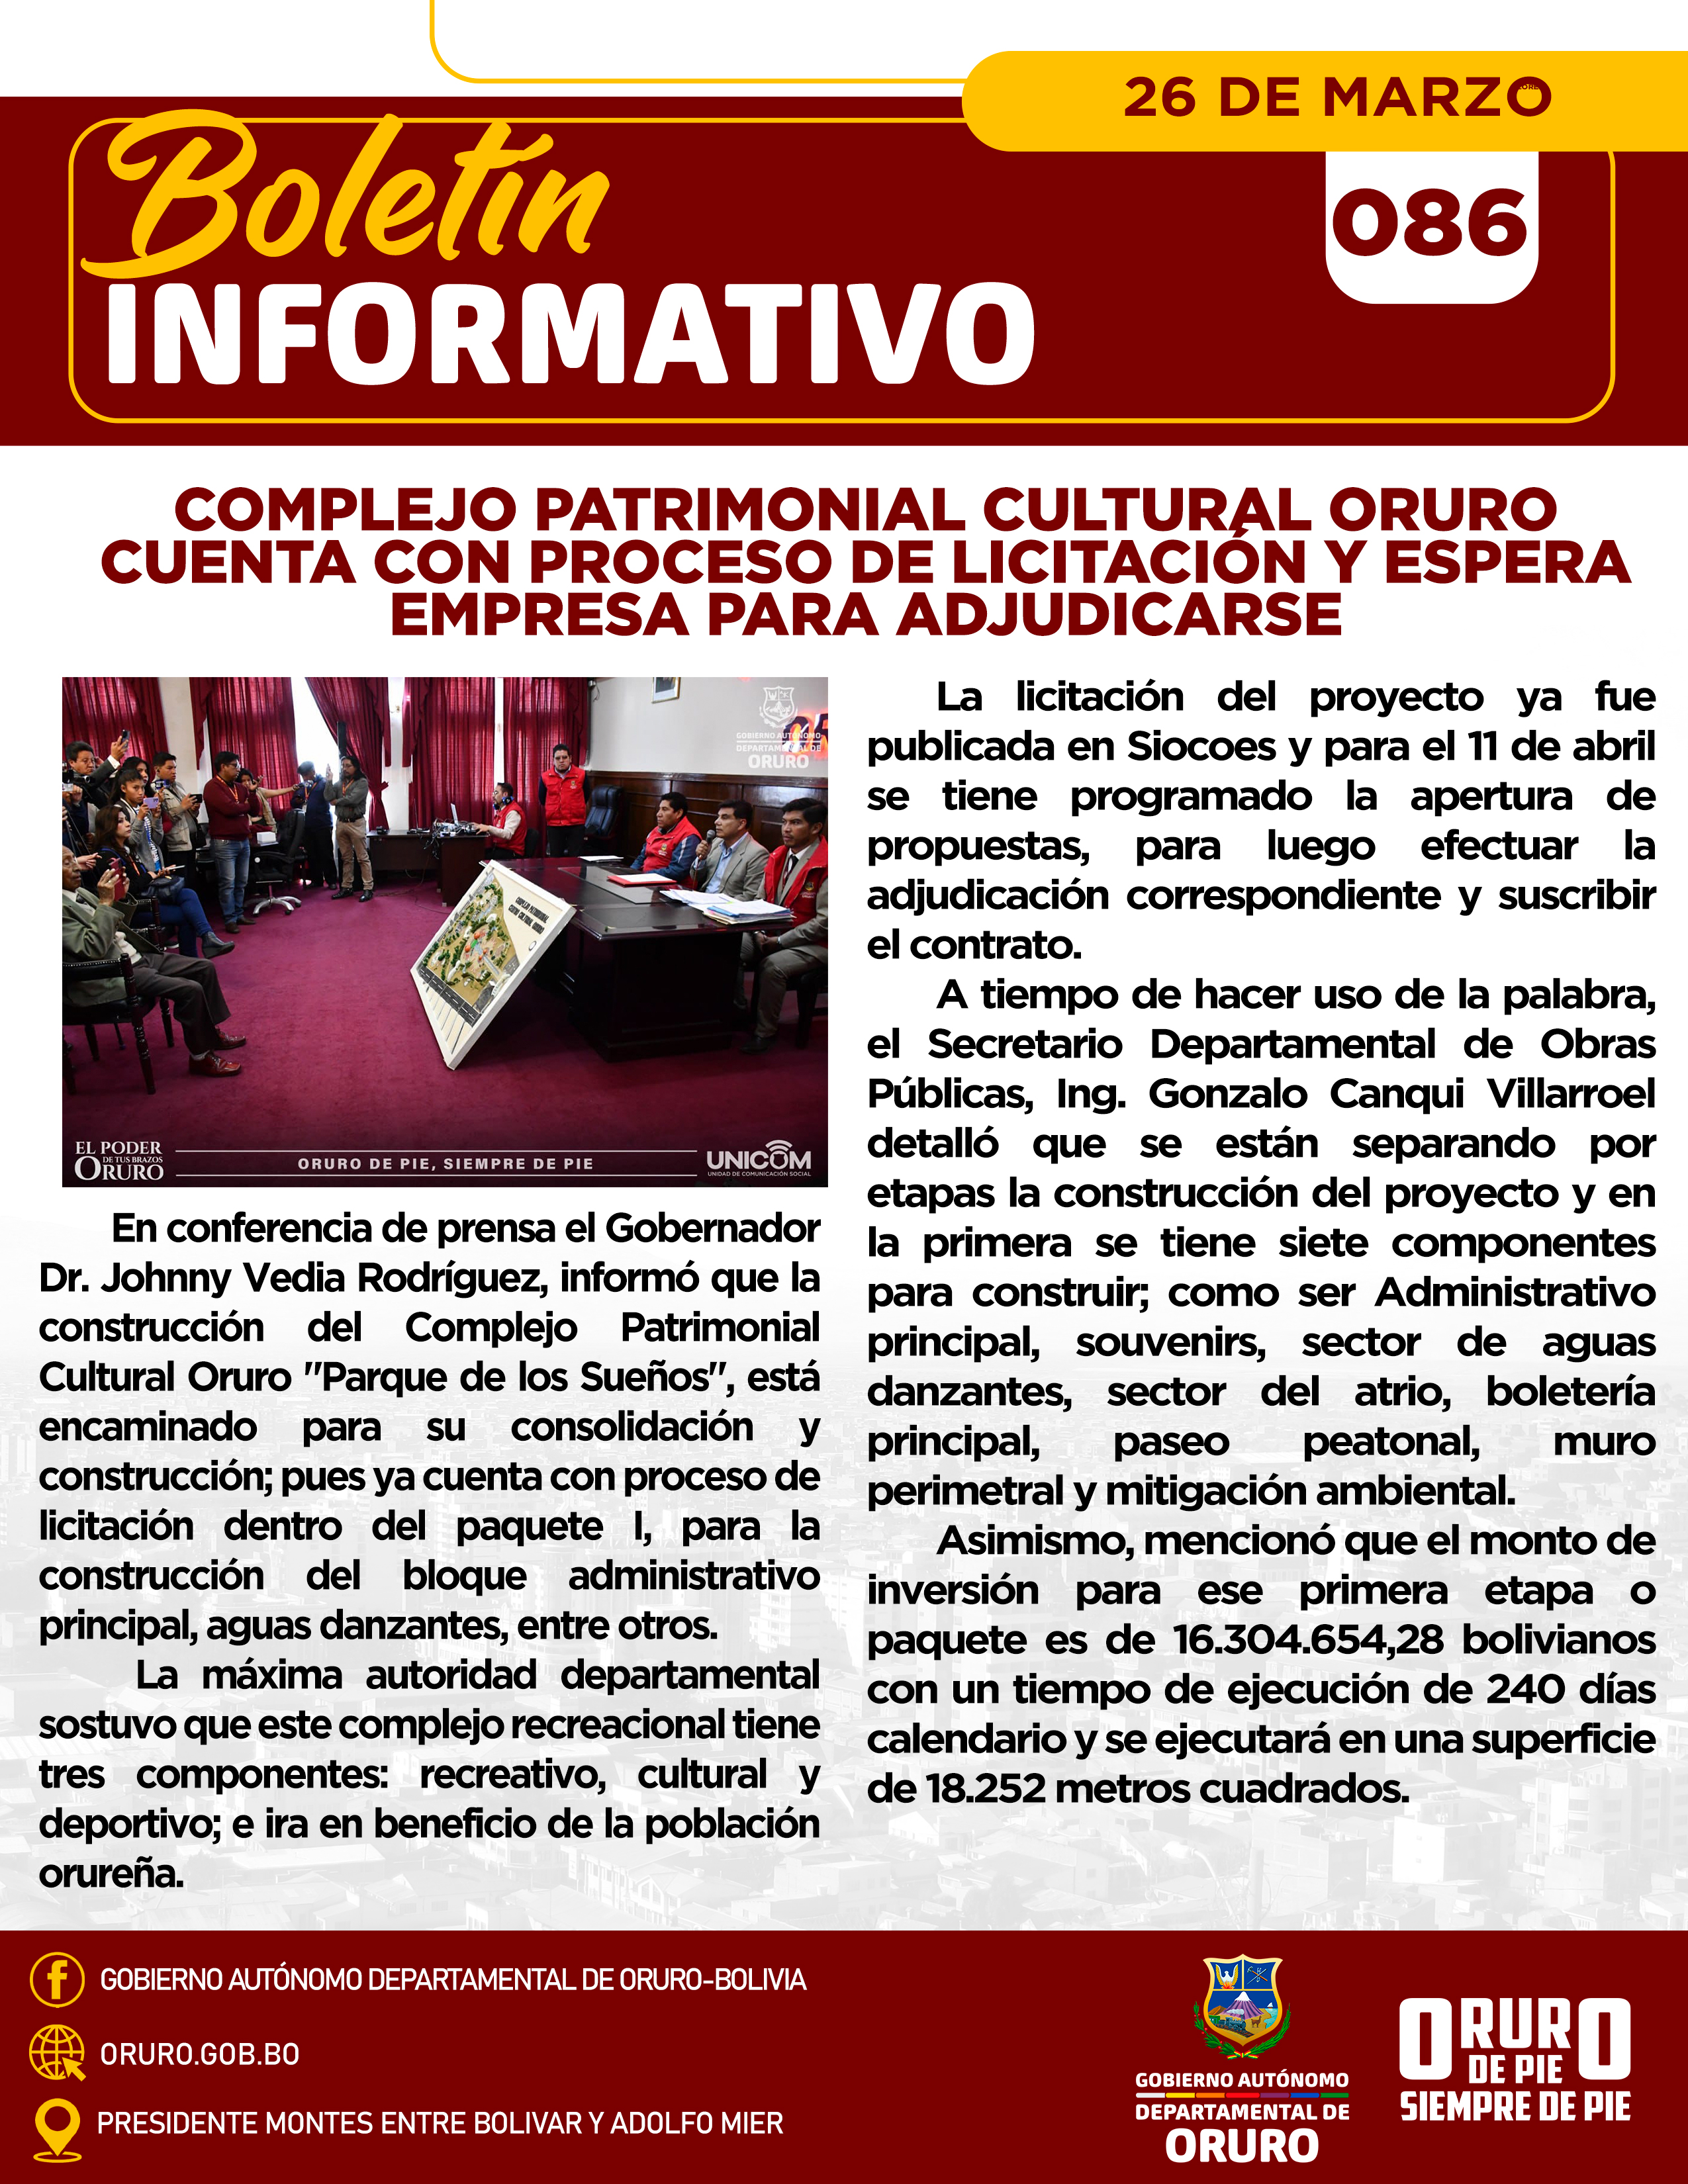 Complejo Patrimonial Cultural Oruro cuenta con proceso de licitación y espera empresa para adjudicarse